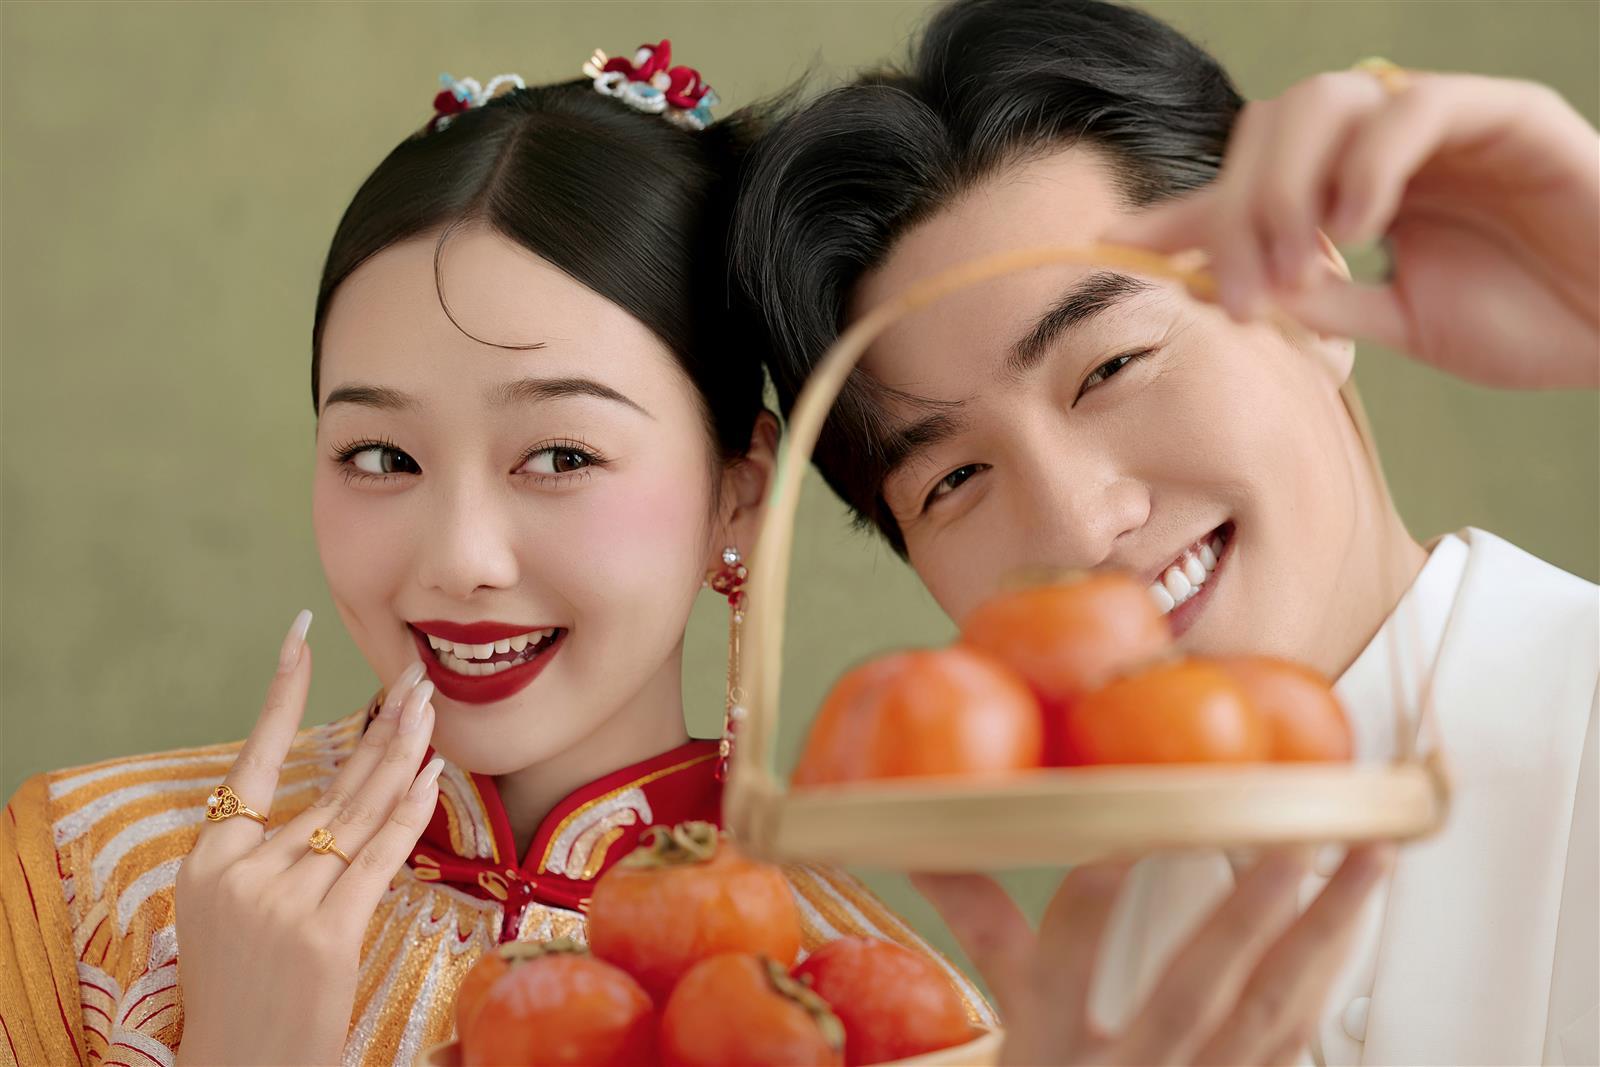 期待已久的新中式喜嫁婚纱照🔥看的人都夸